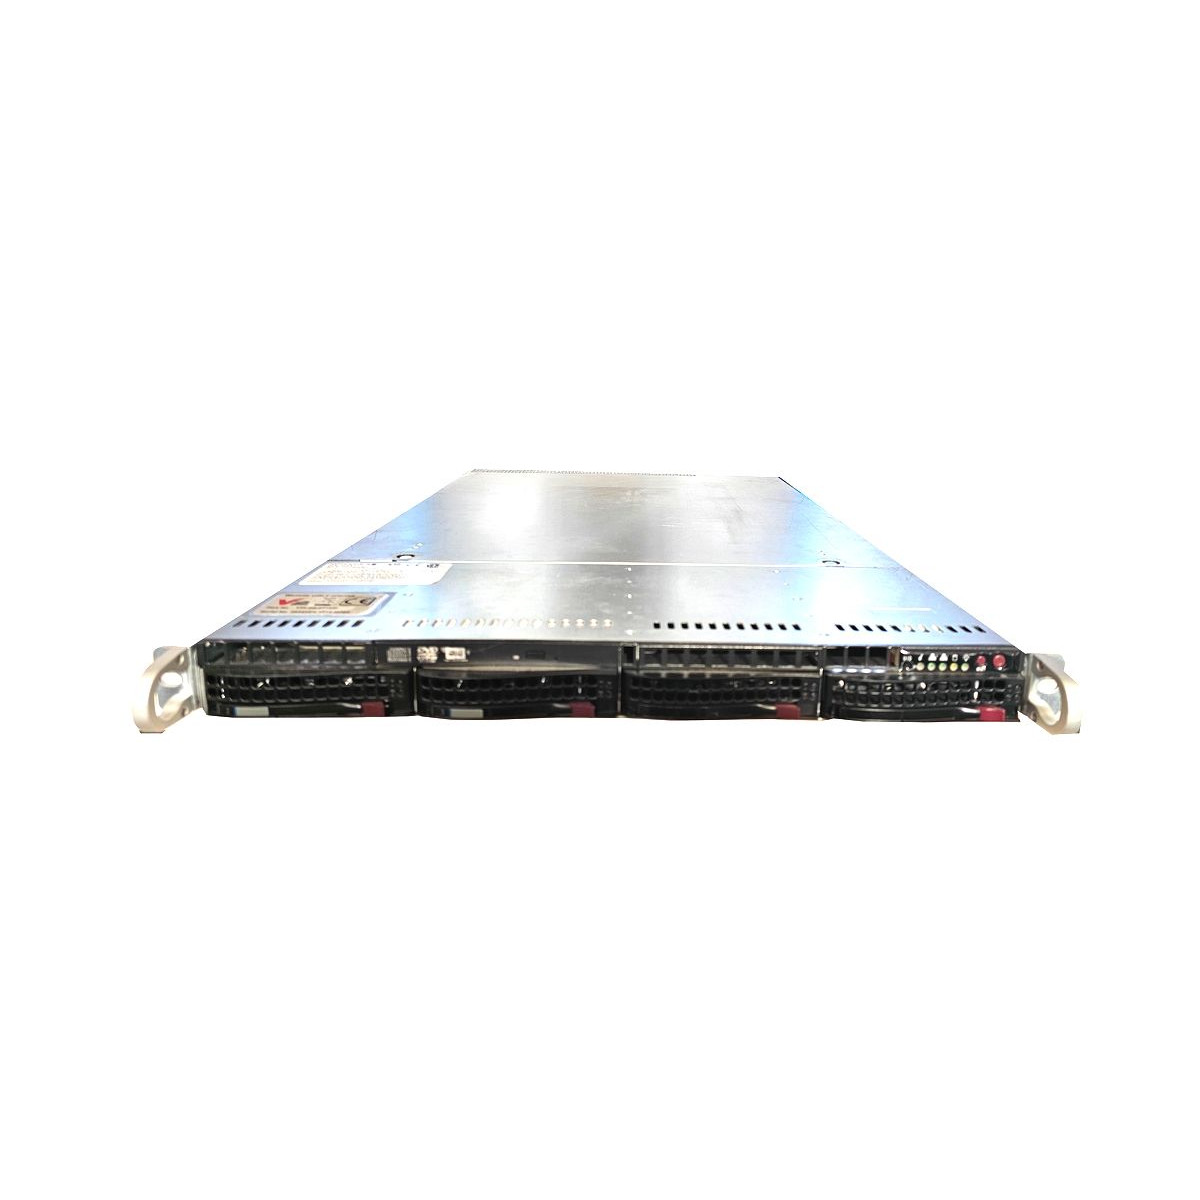 SUPERMICRO SC815 E5-4657L v2 64GB 2x3TB 2xPSU RAID